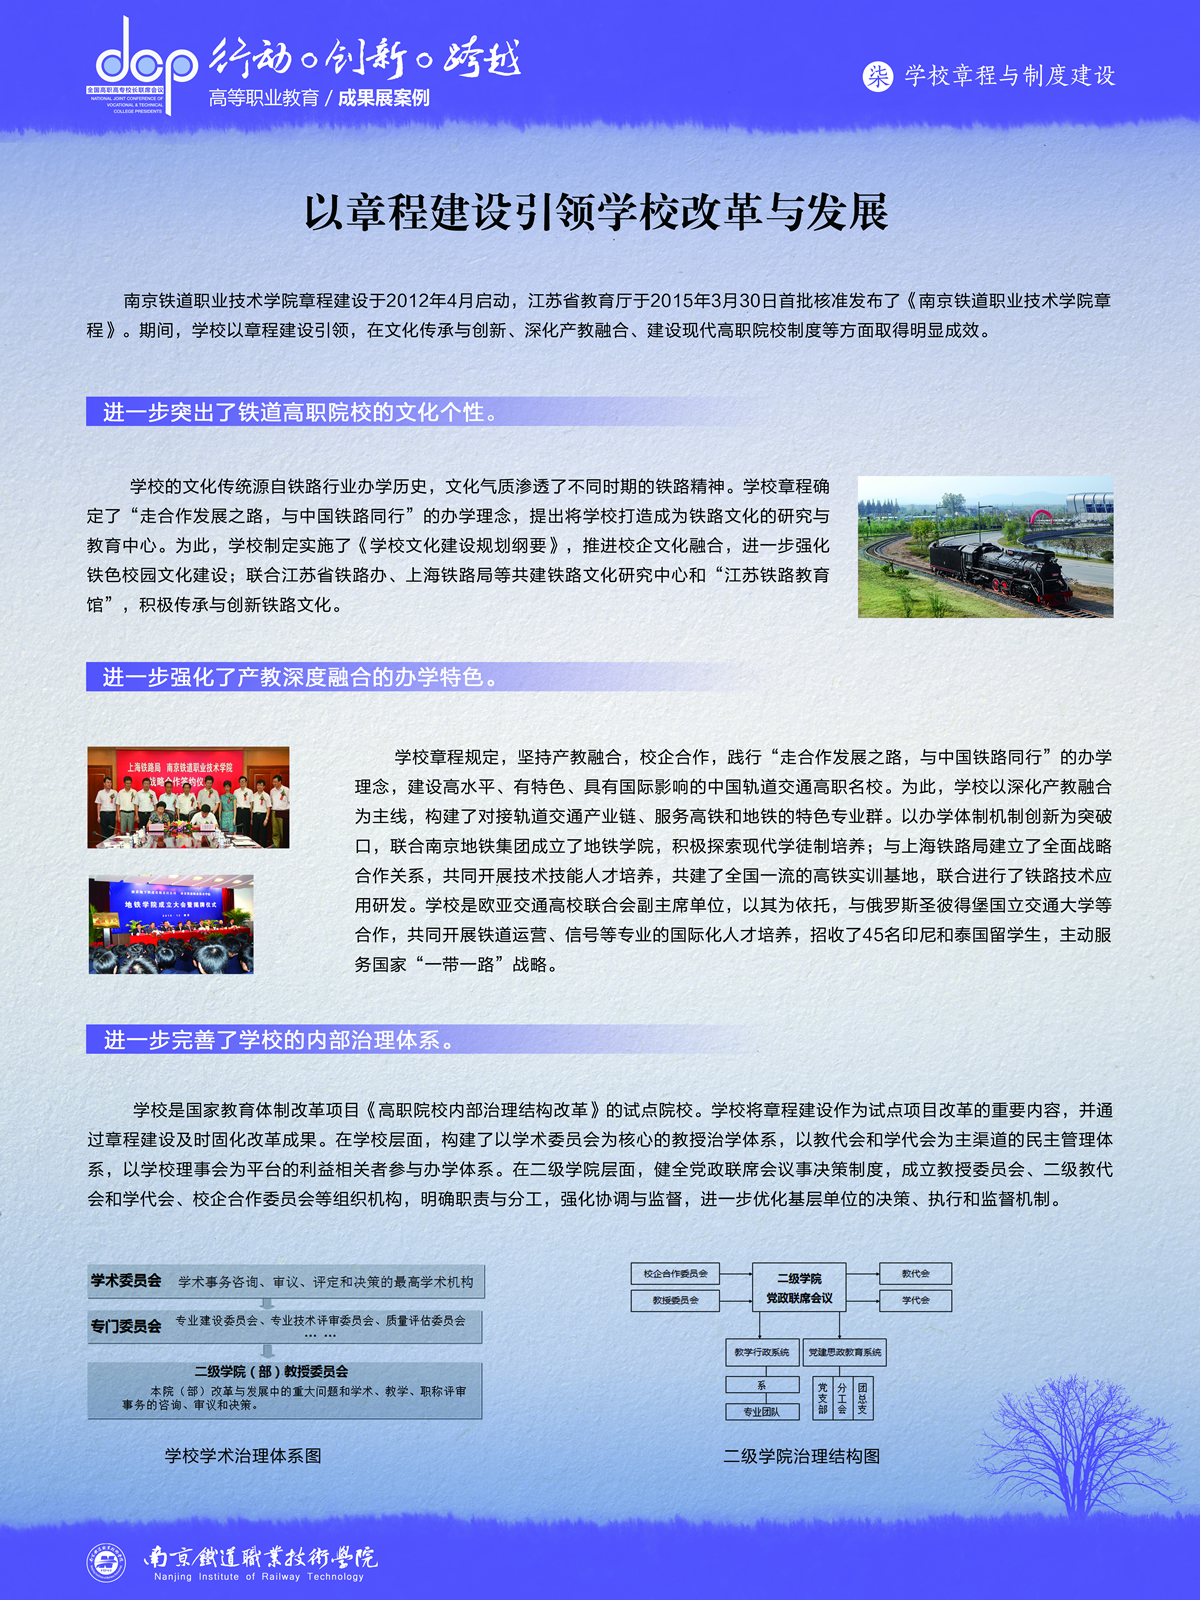 南京铁道职业技术学院 宣传展板 以章程建设引领学校改革与发展.jpg